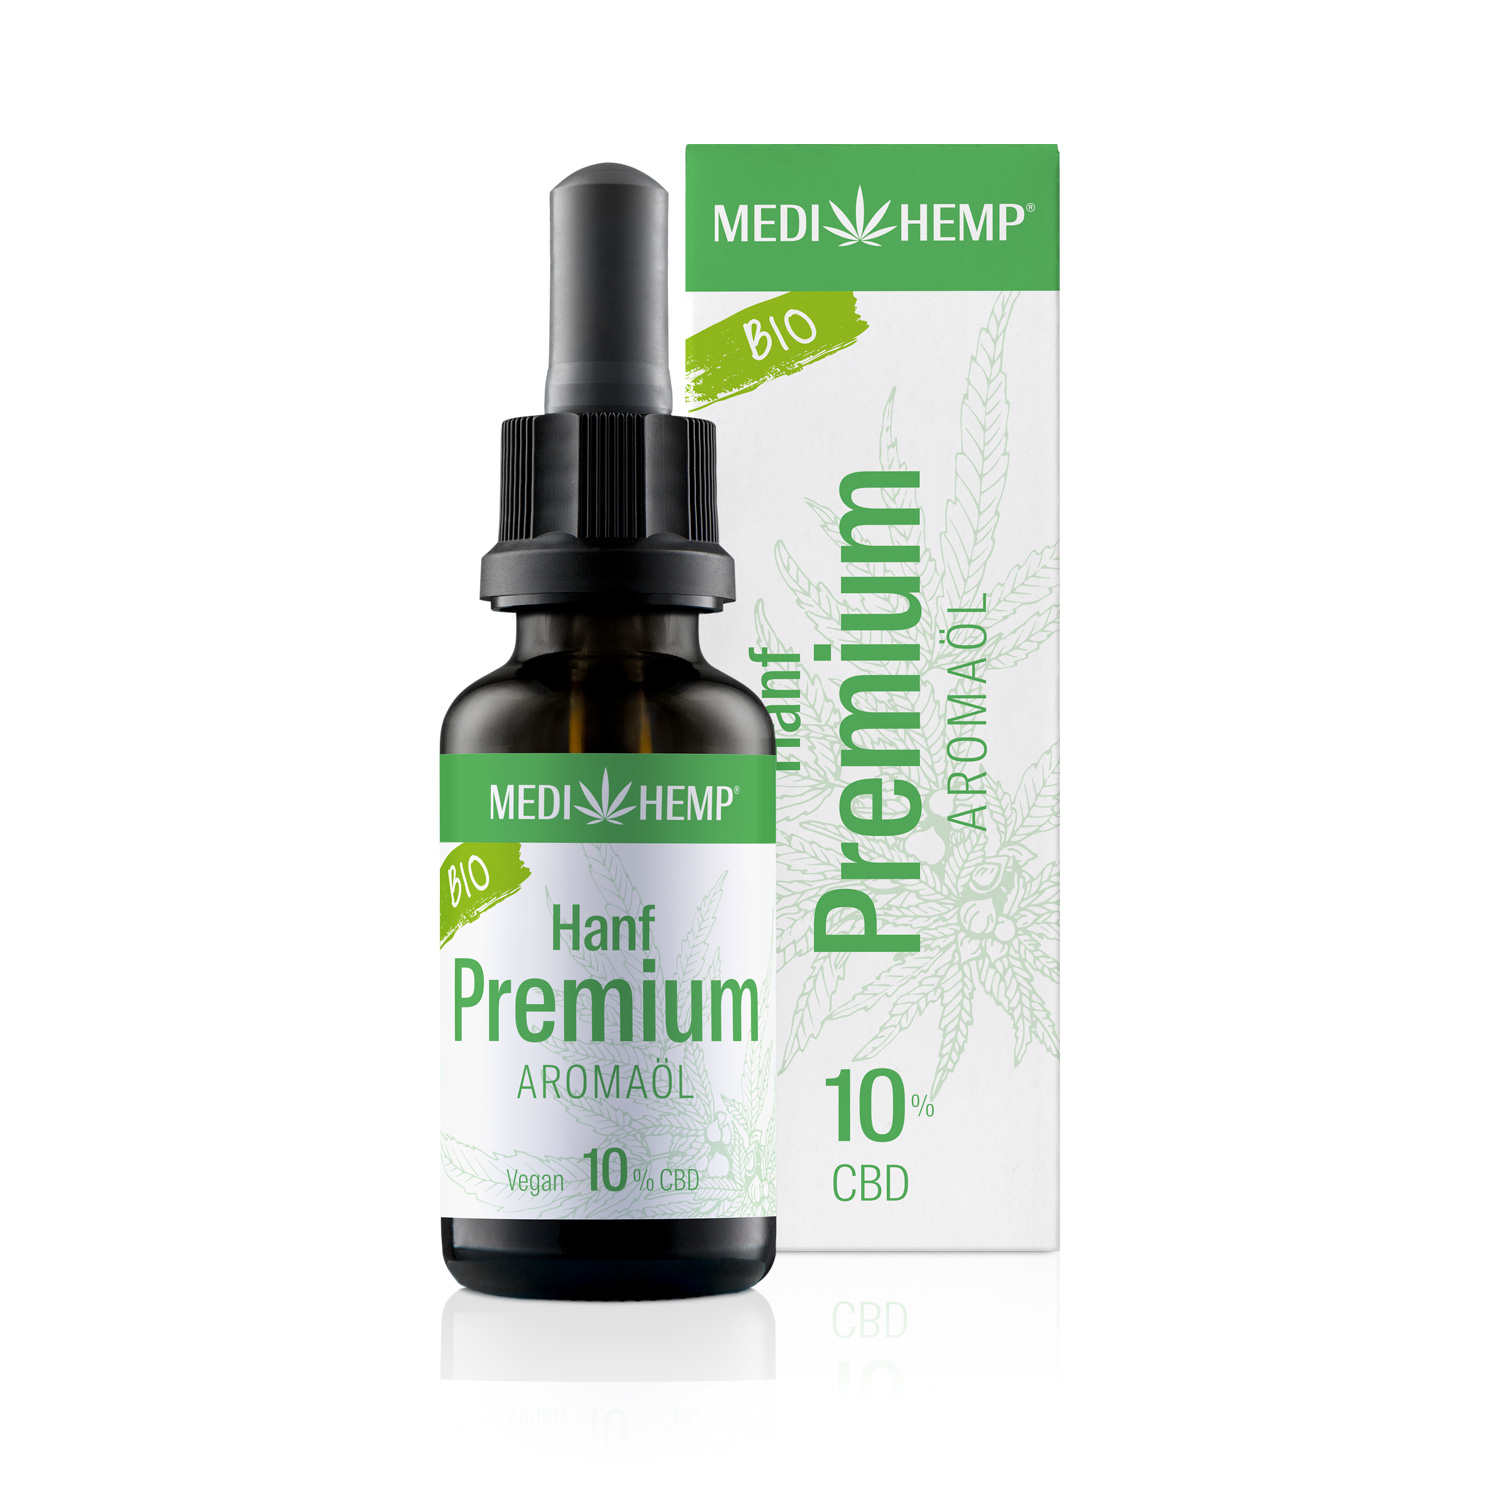 Medihemp – Bio Hanf Premium – Bio CBD Öl 10